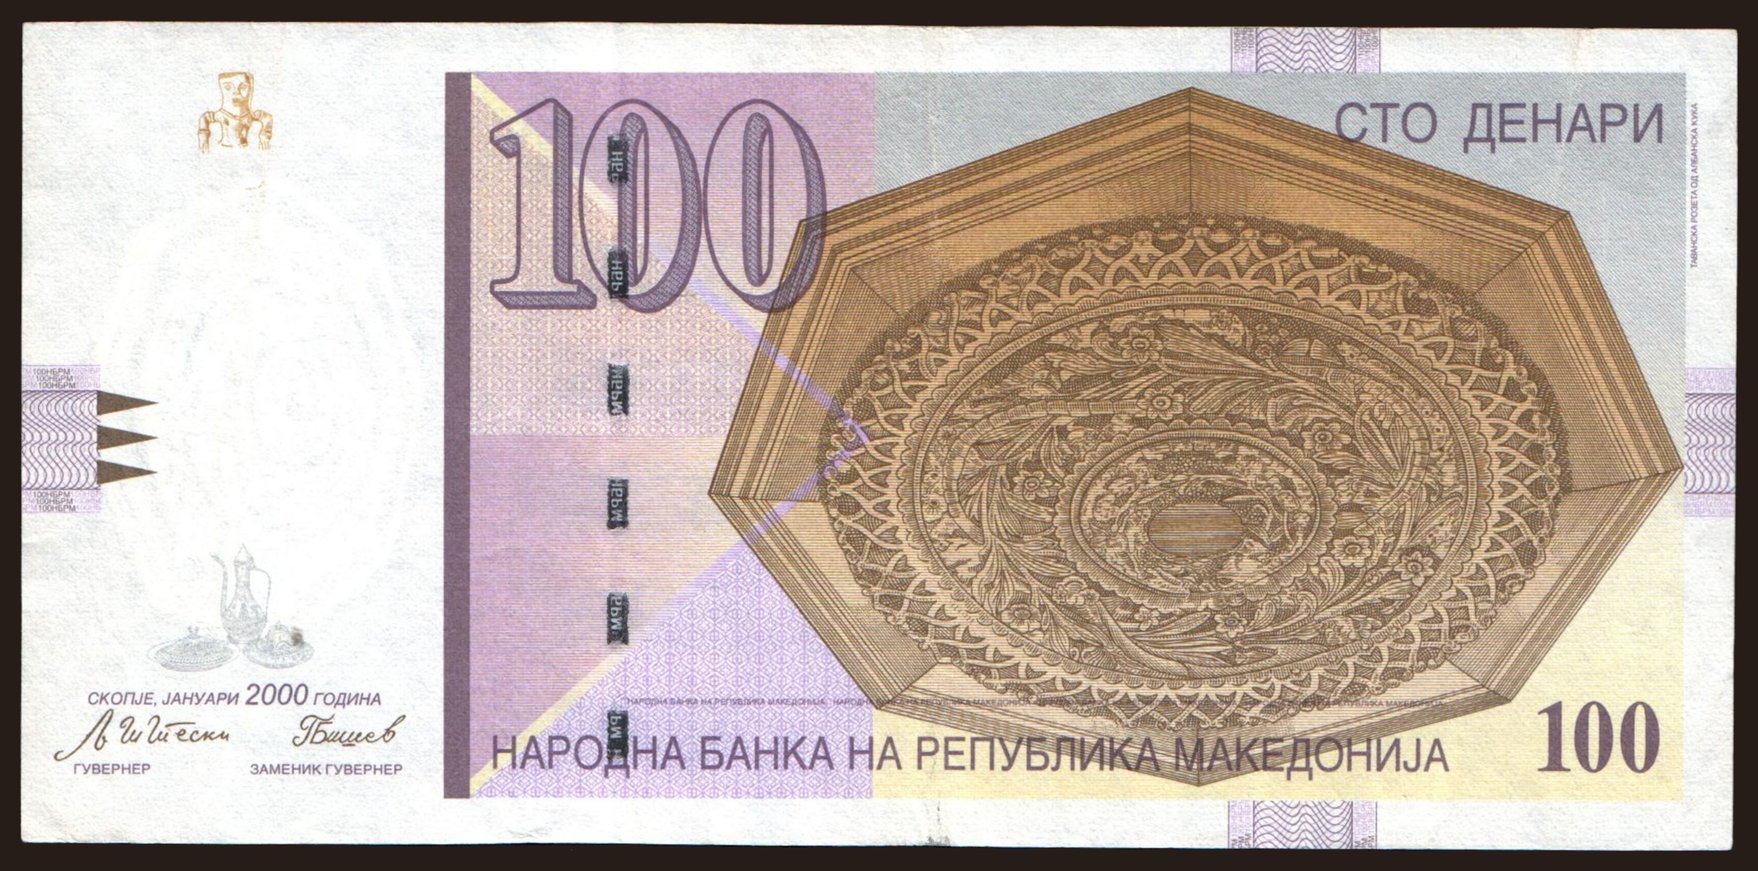 100 denari, 2000